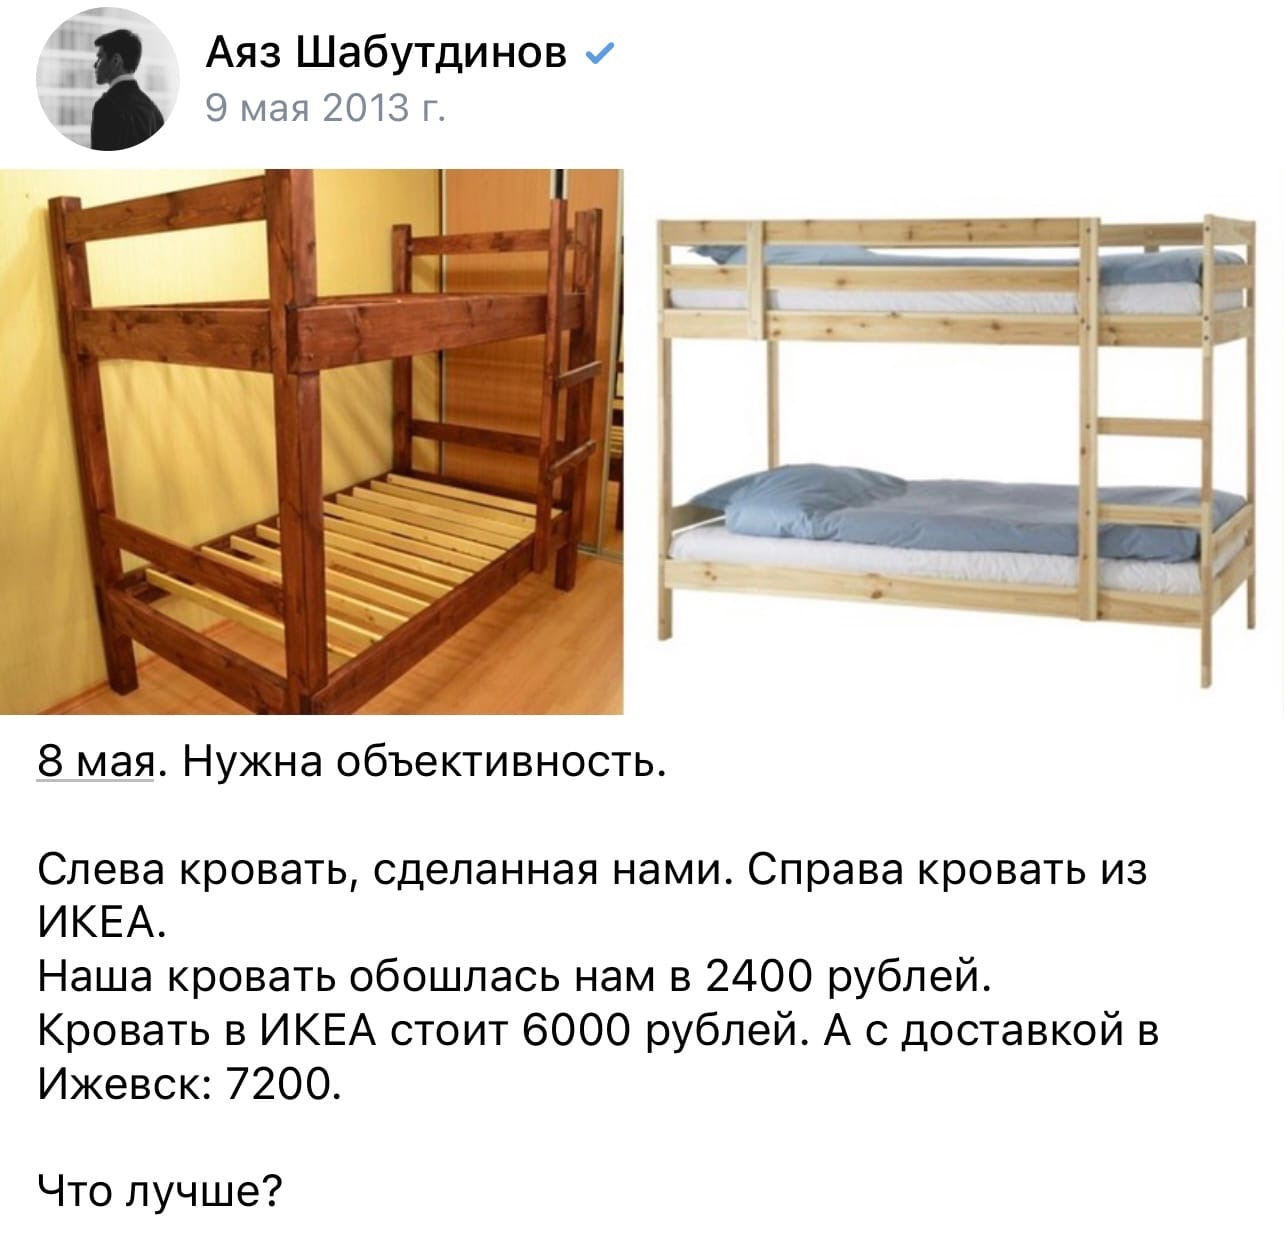 Первые кровати для хостела Аяз и его партнер сделали своими руками